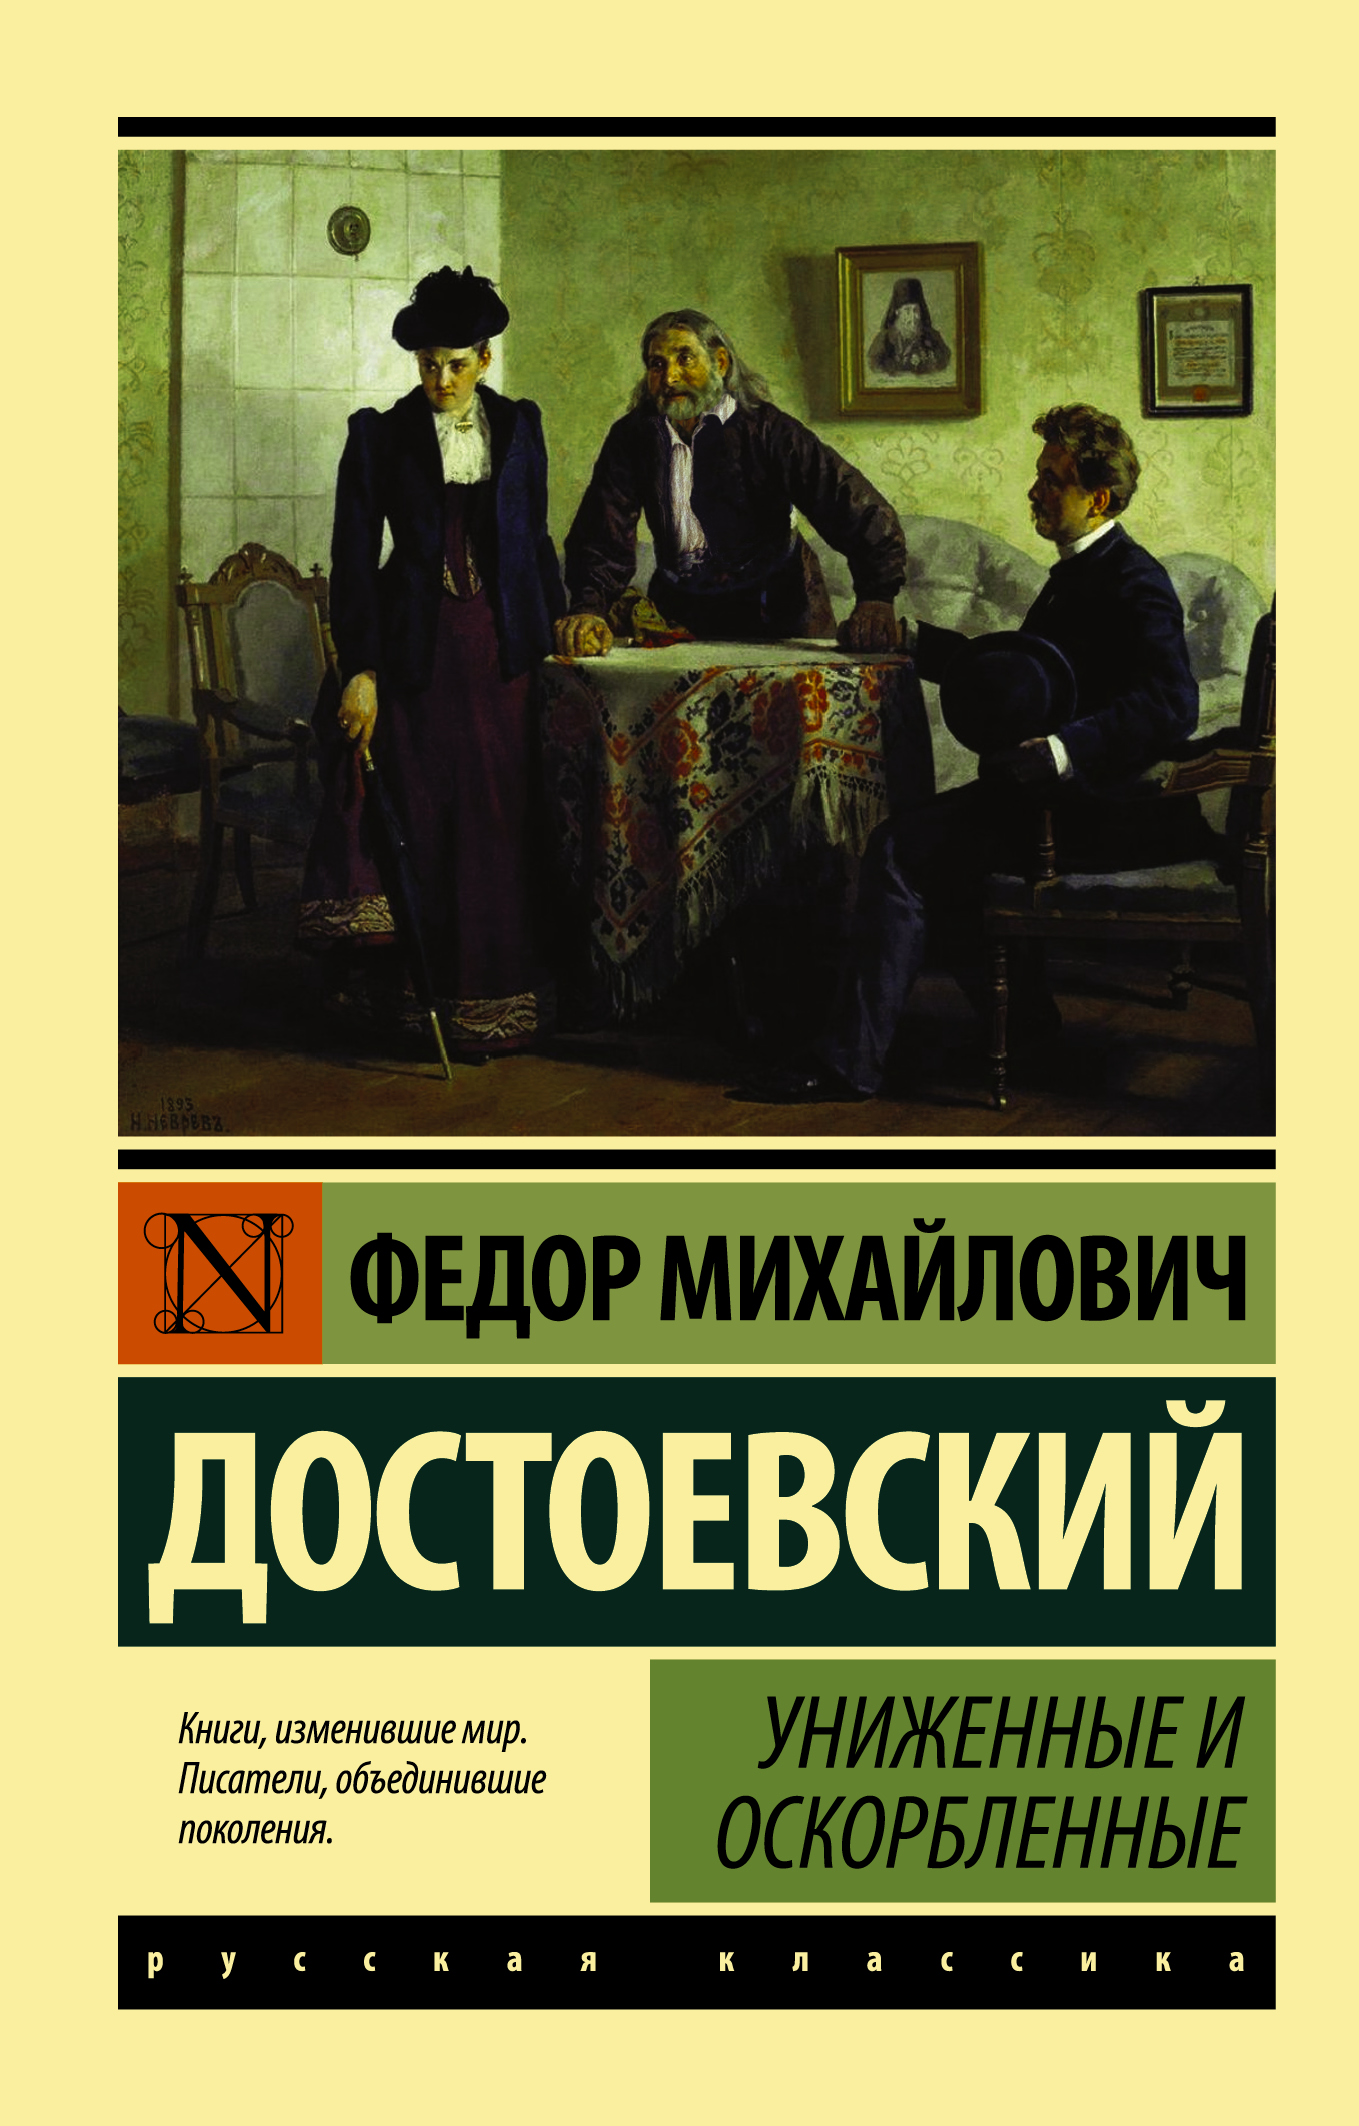 Книга «Униженные и оскорбленные» Федор Достоевский